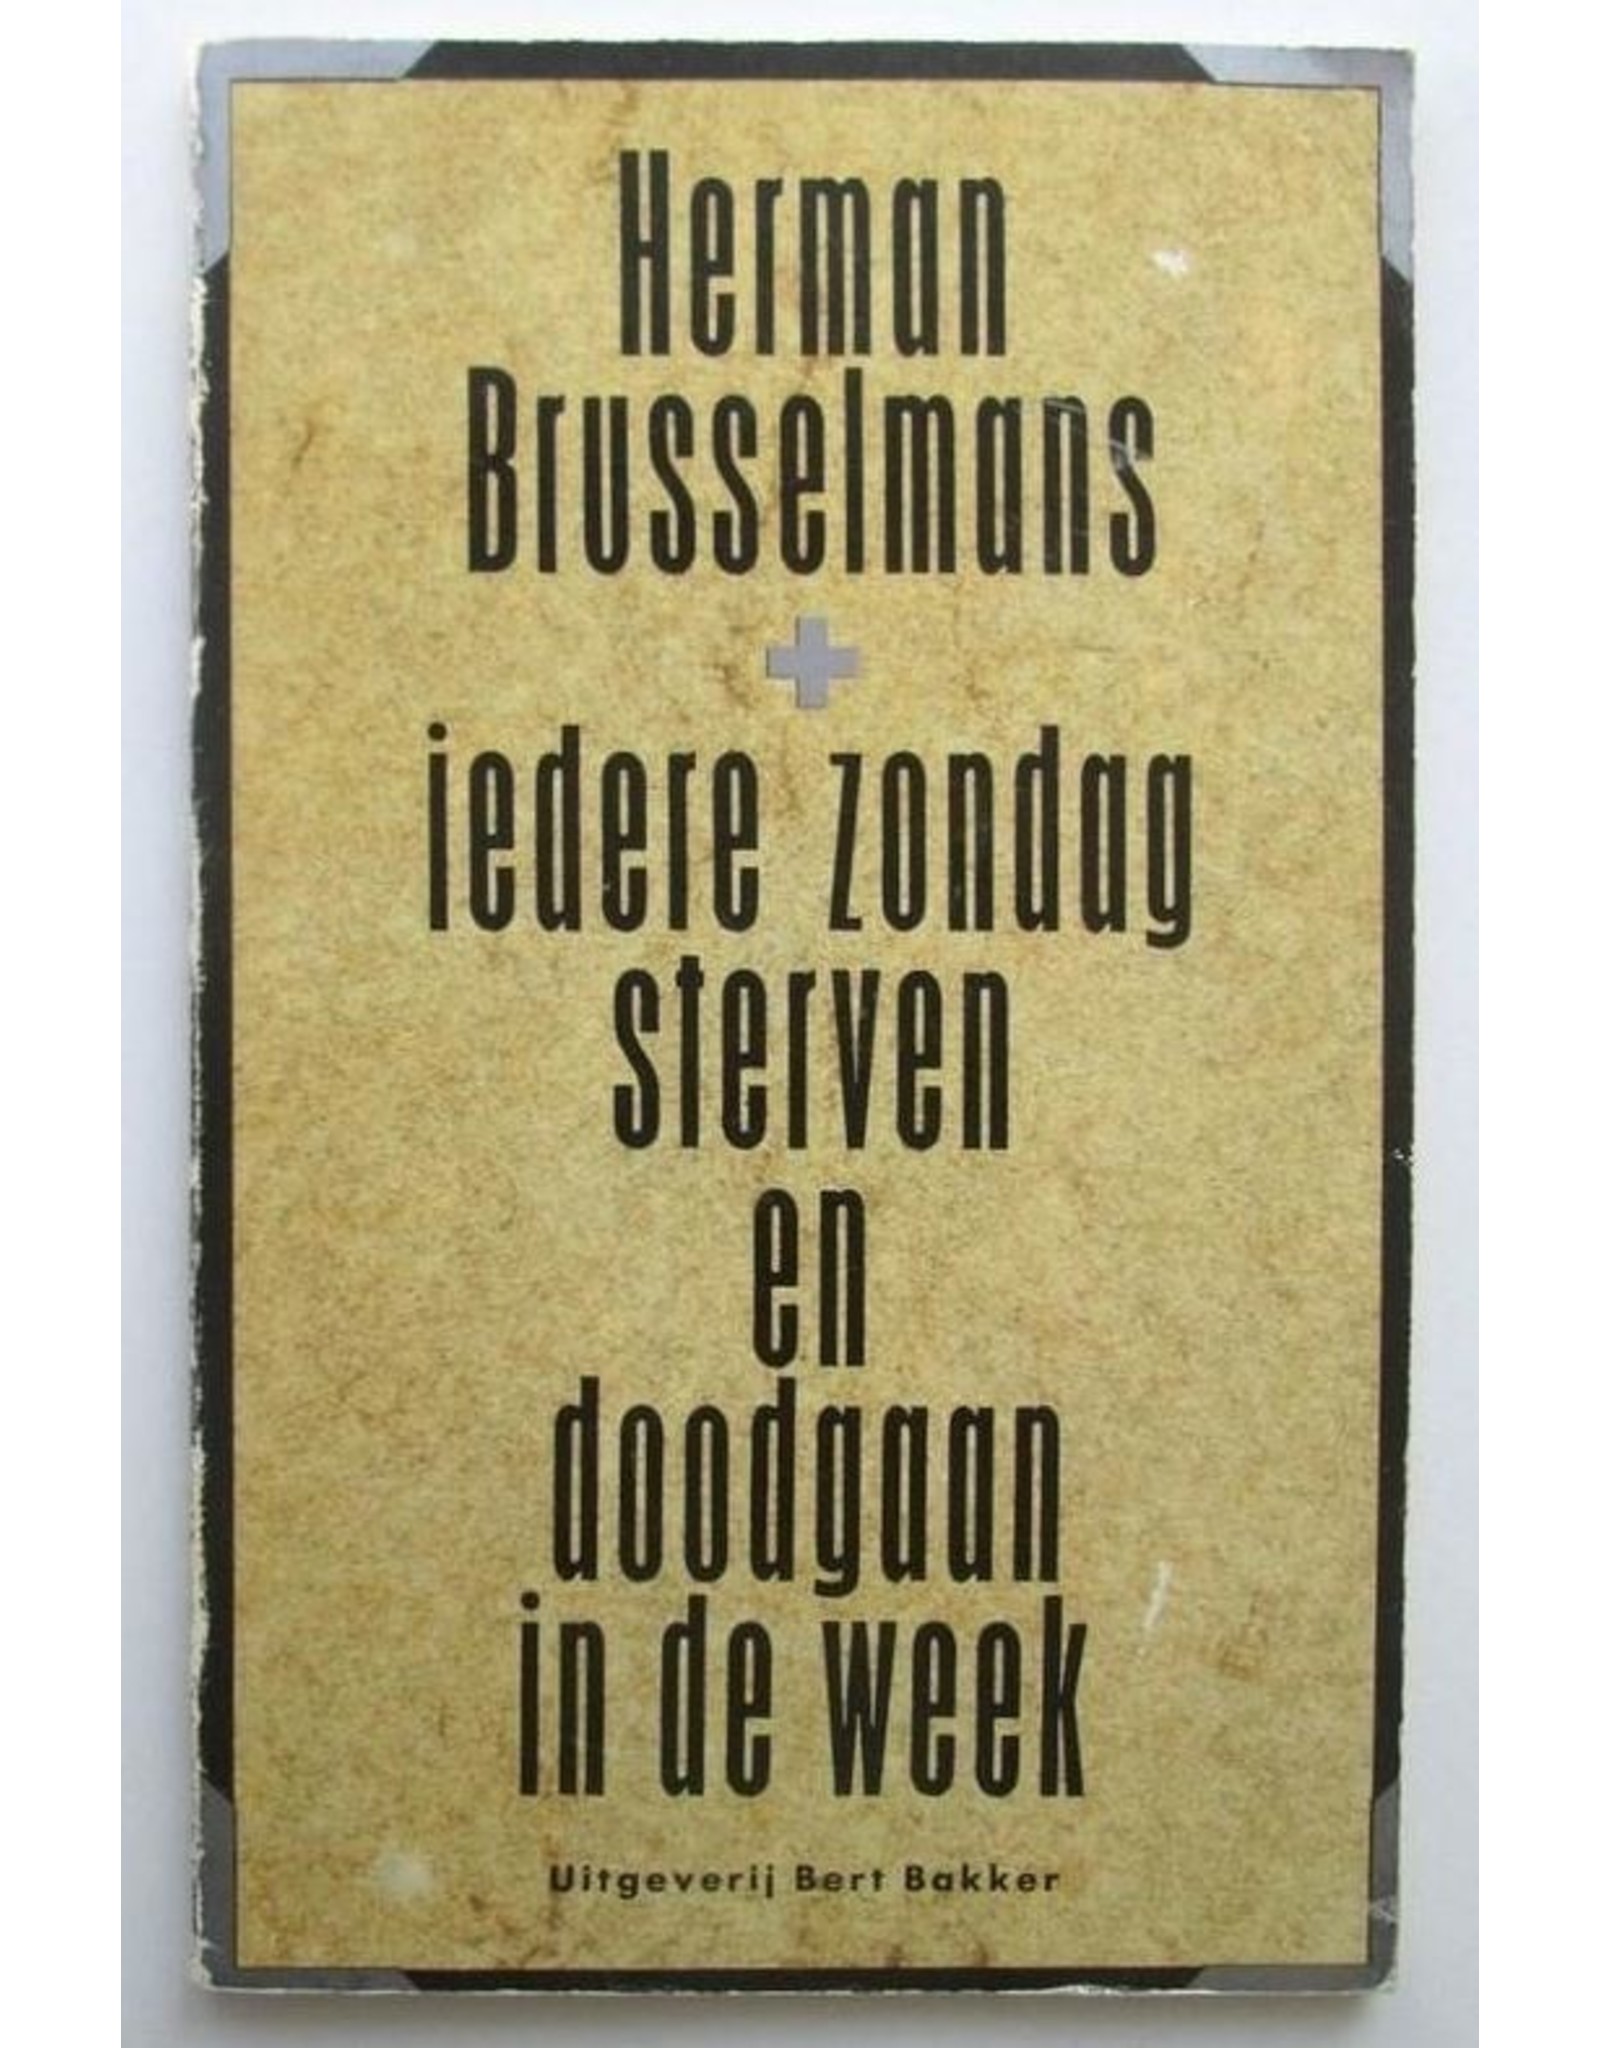 Herman Brusselmans - Iedere zondag sterven en doodgaan in de week